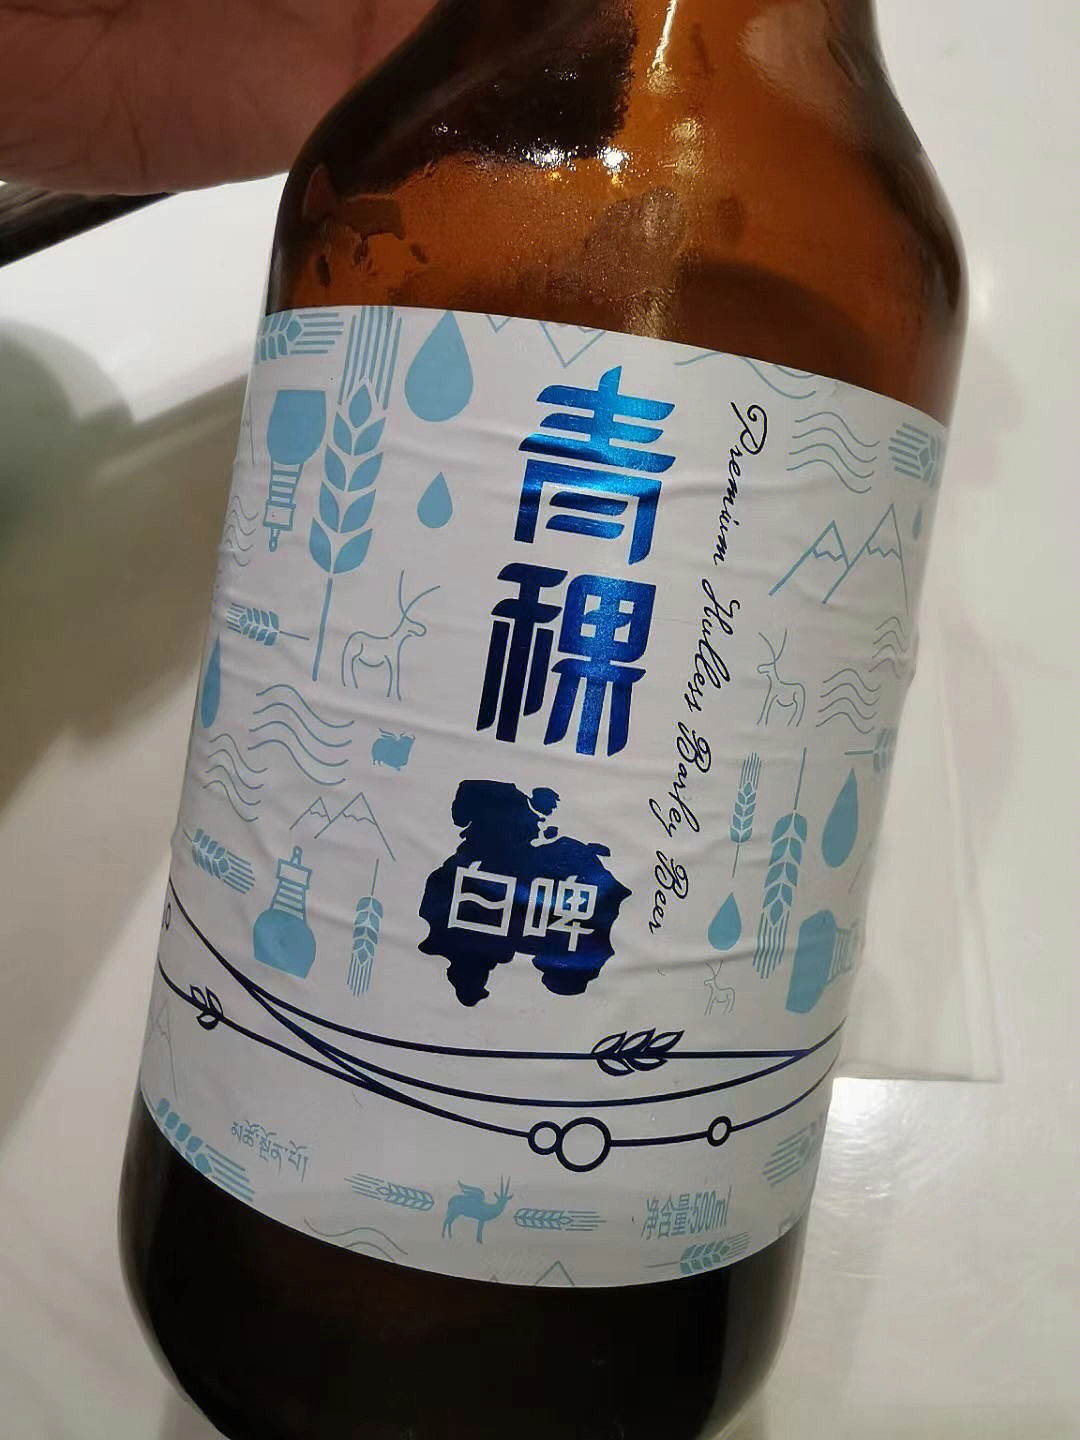 黑青稞啤酒图片